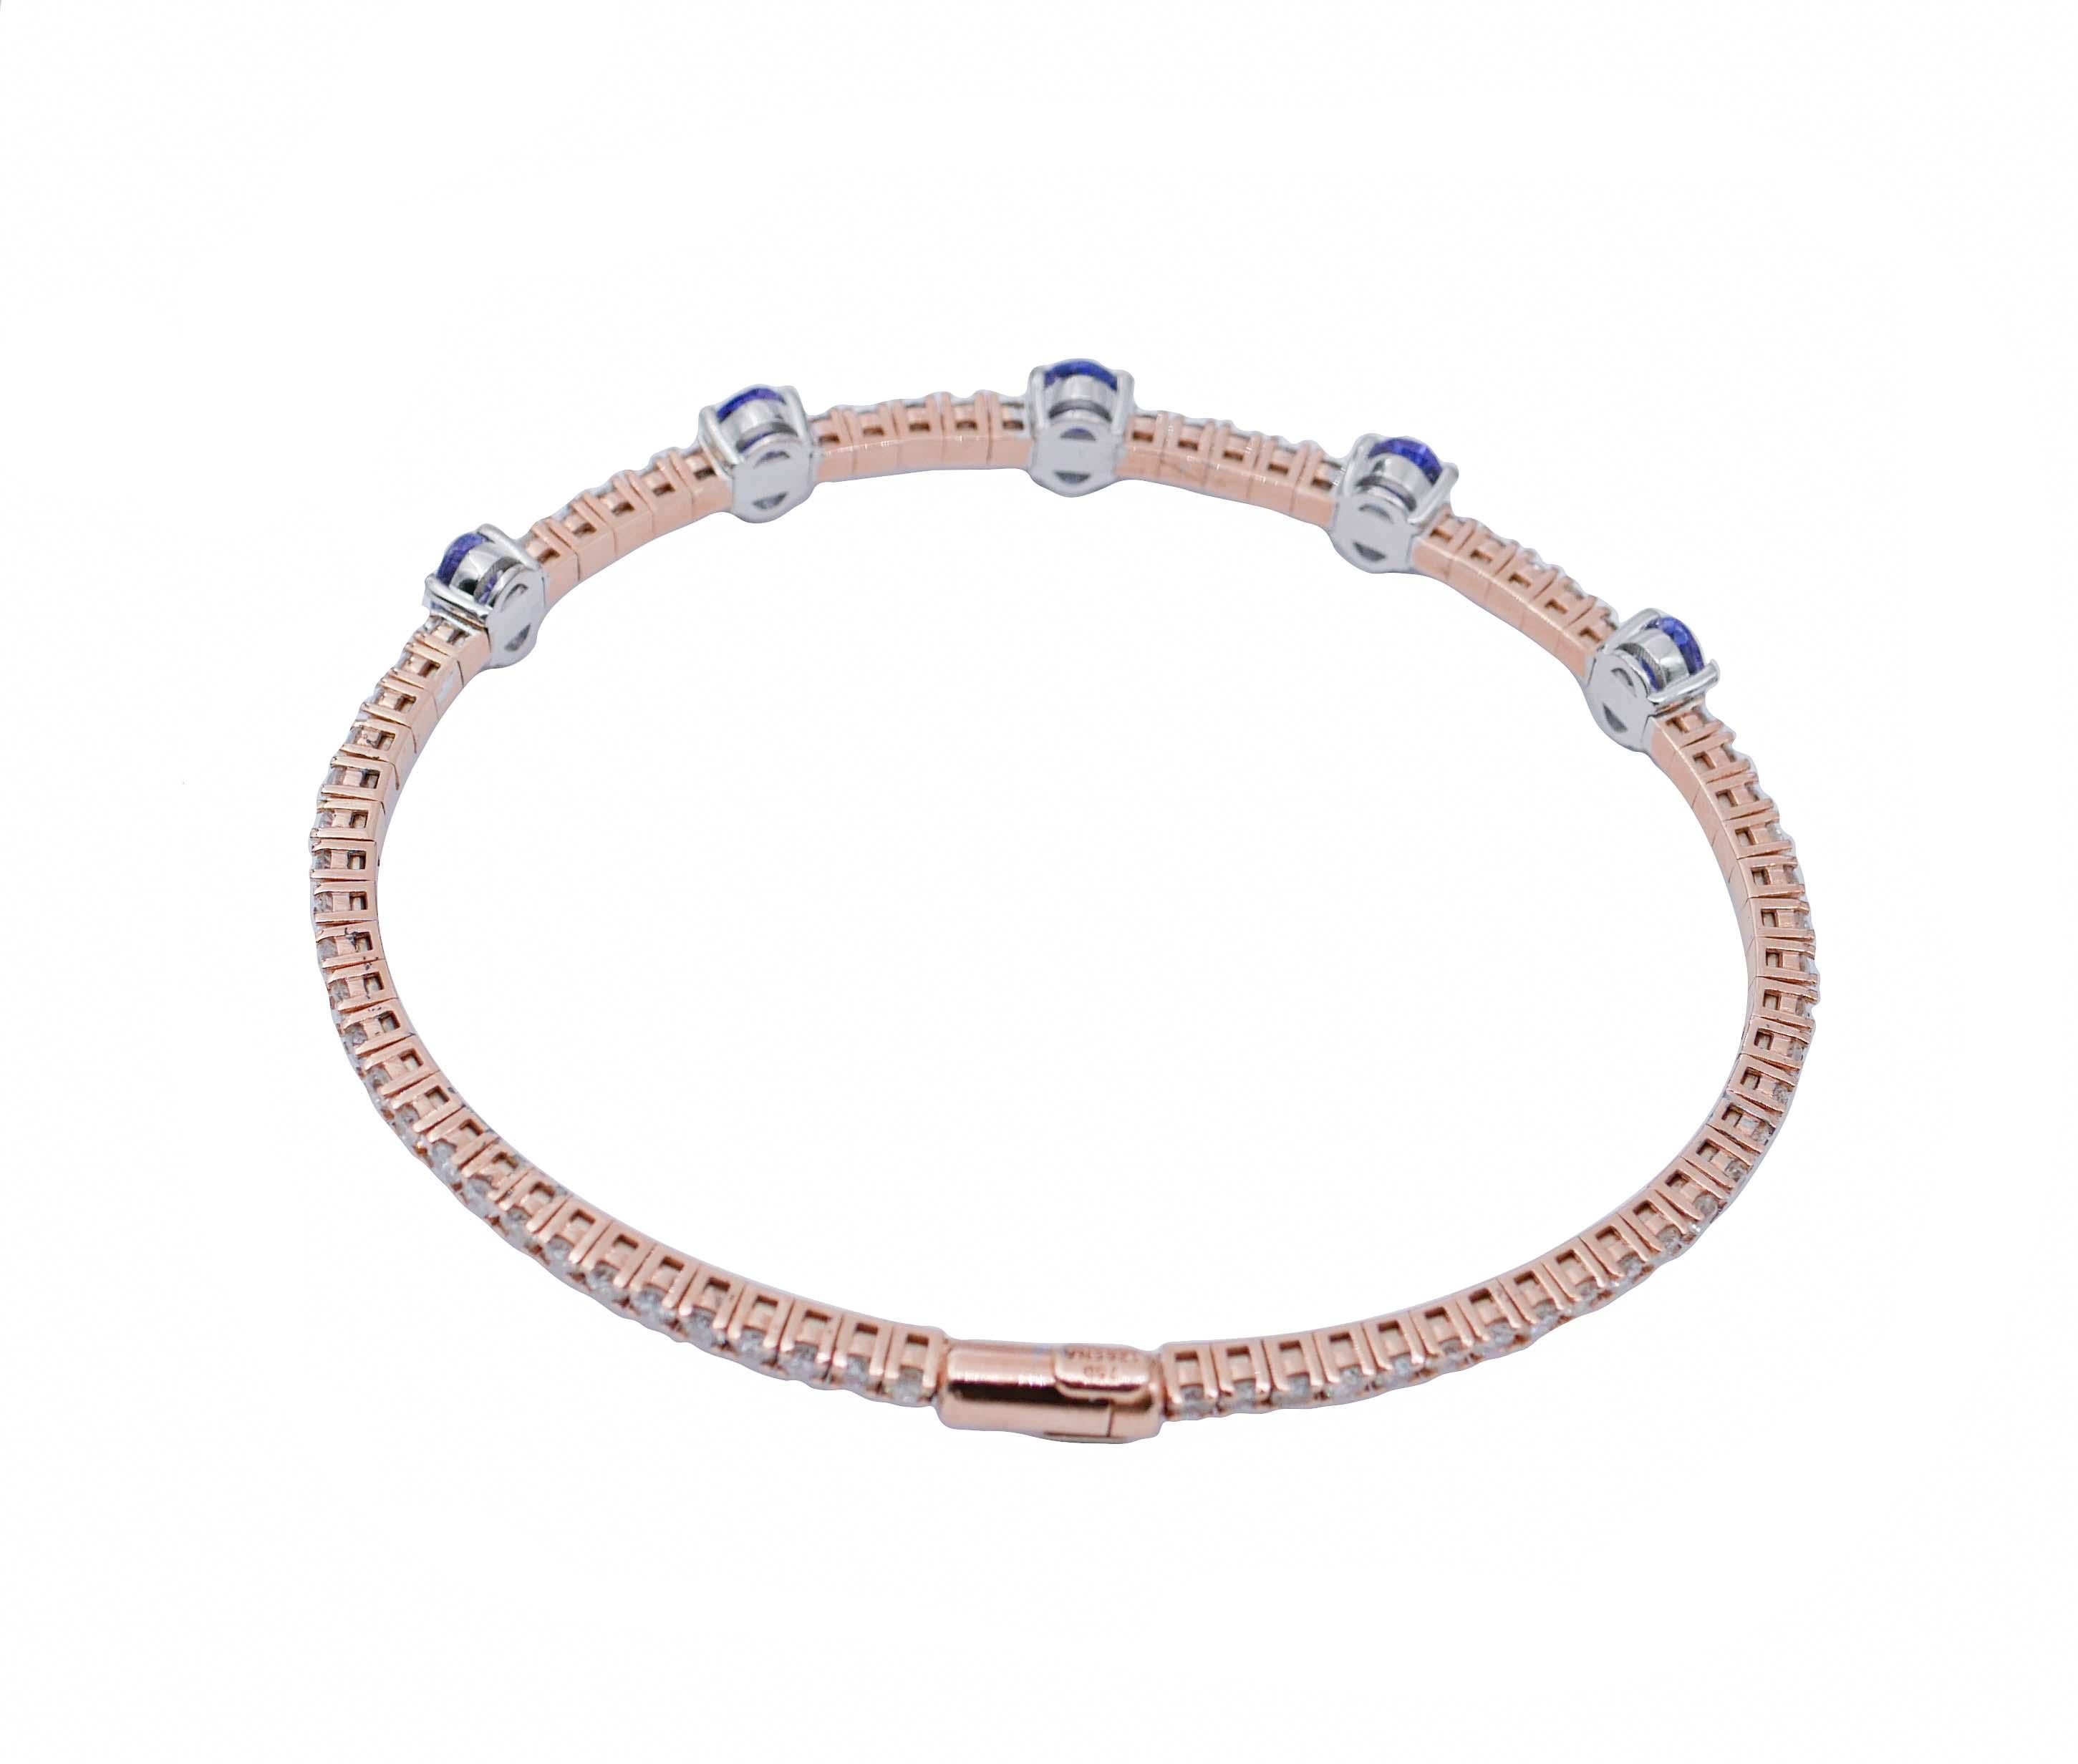 Modern Tanzanite, Diamonds, 18 Karat Rose and White Gold Bracelet.